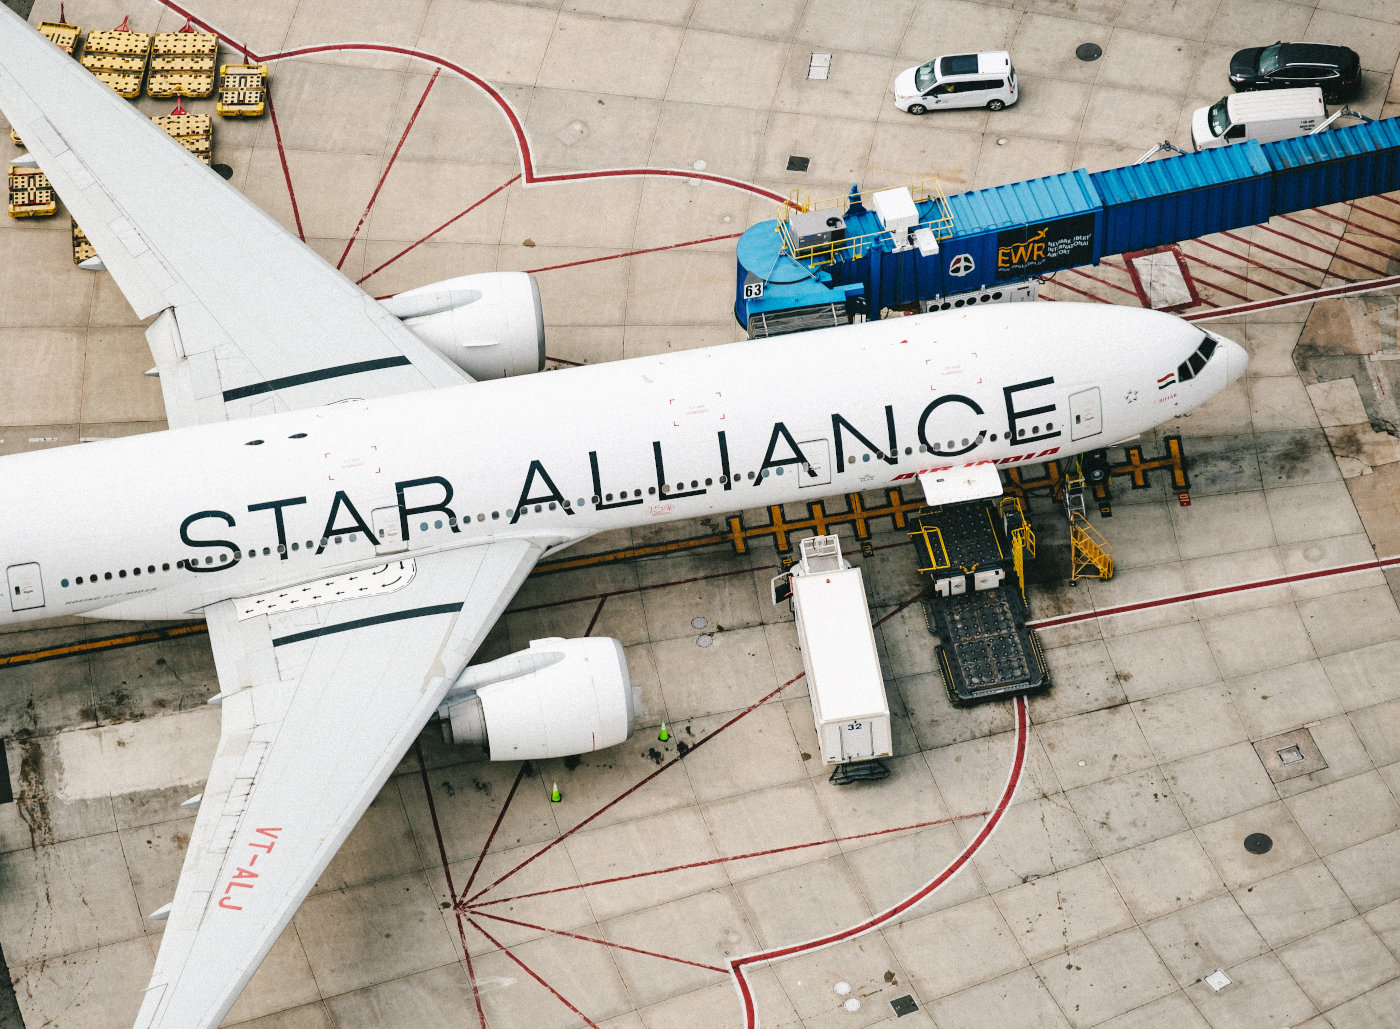 ein Flugzeug der Airline-Allianz Star Alliance